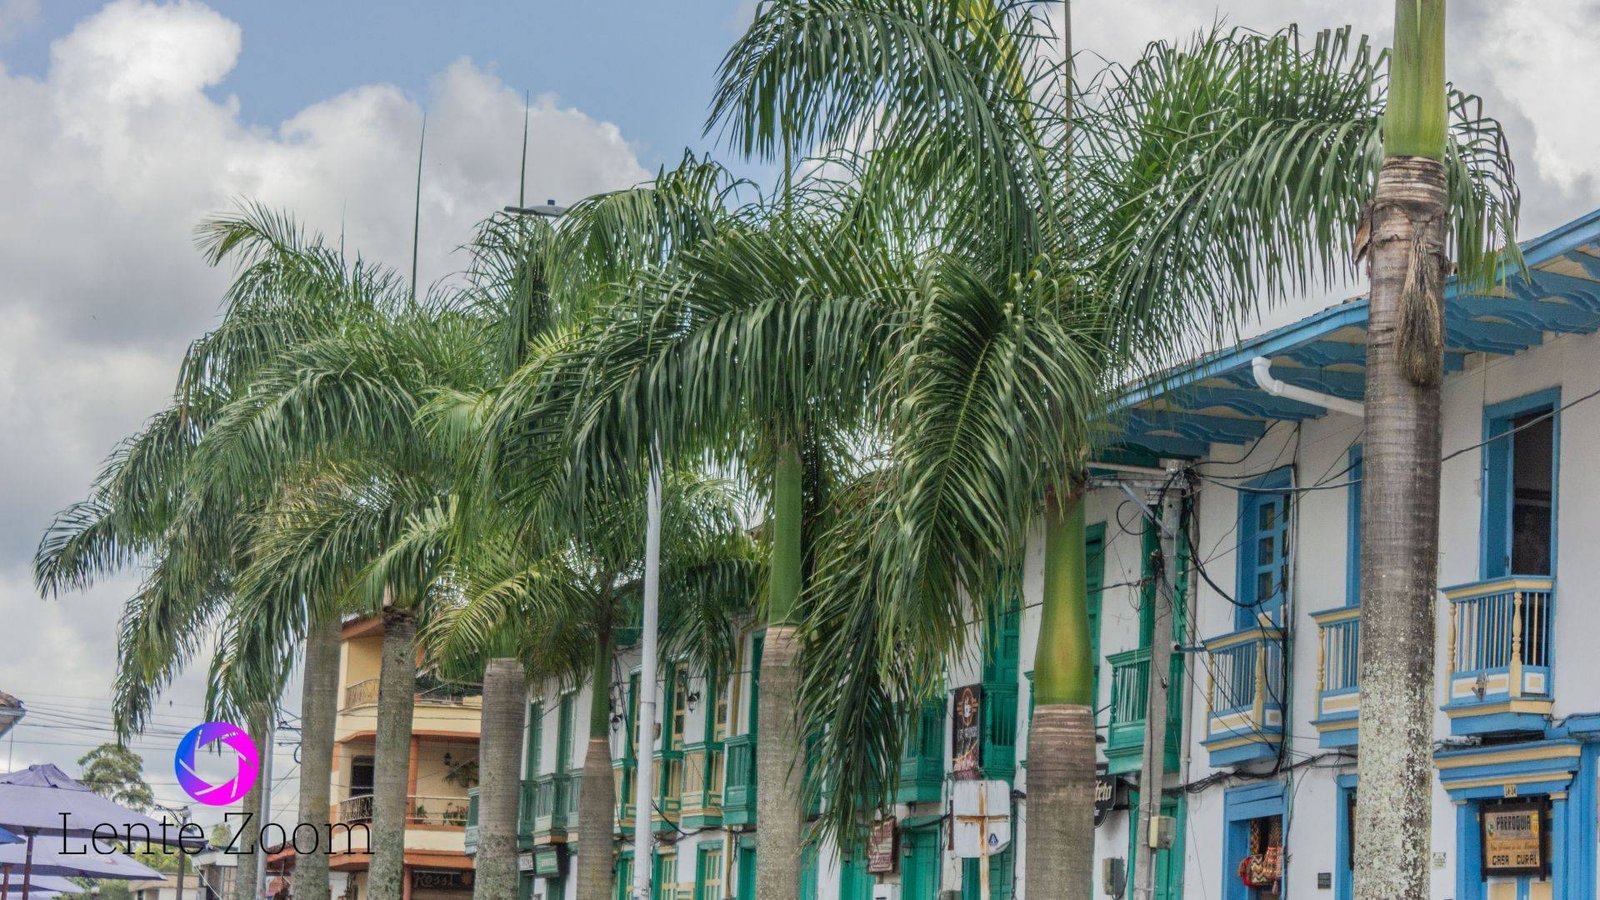 Vista de palmeras y casa tipicas de diferentes colores